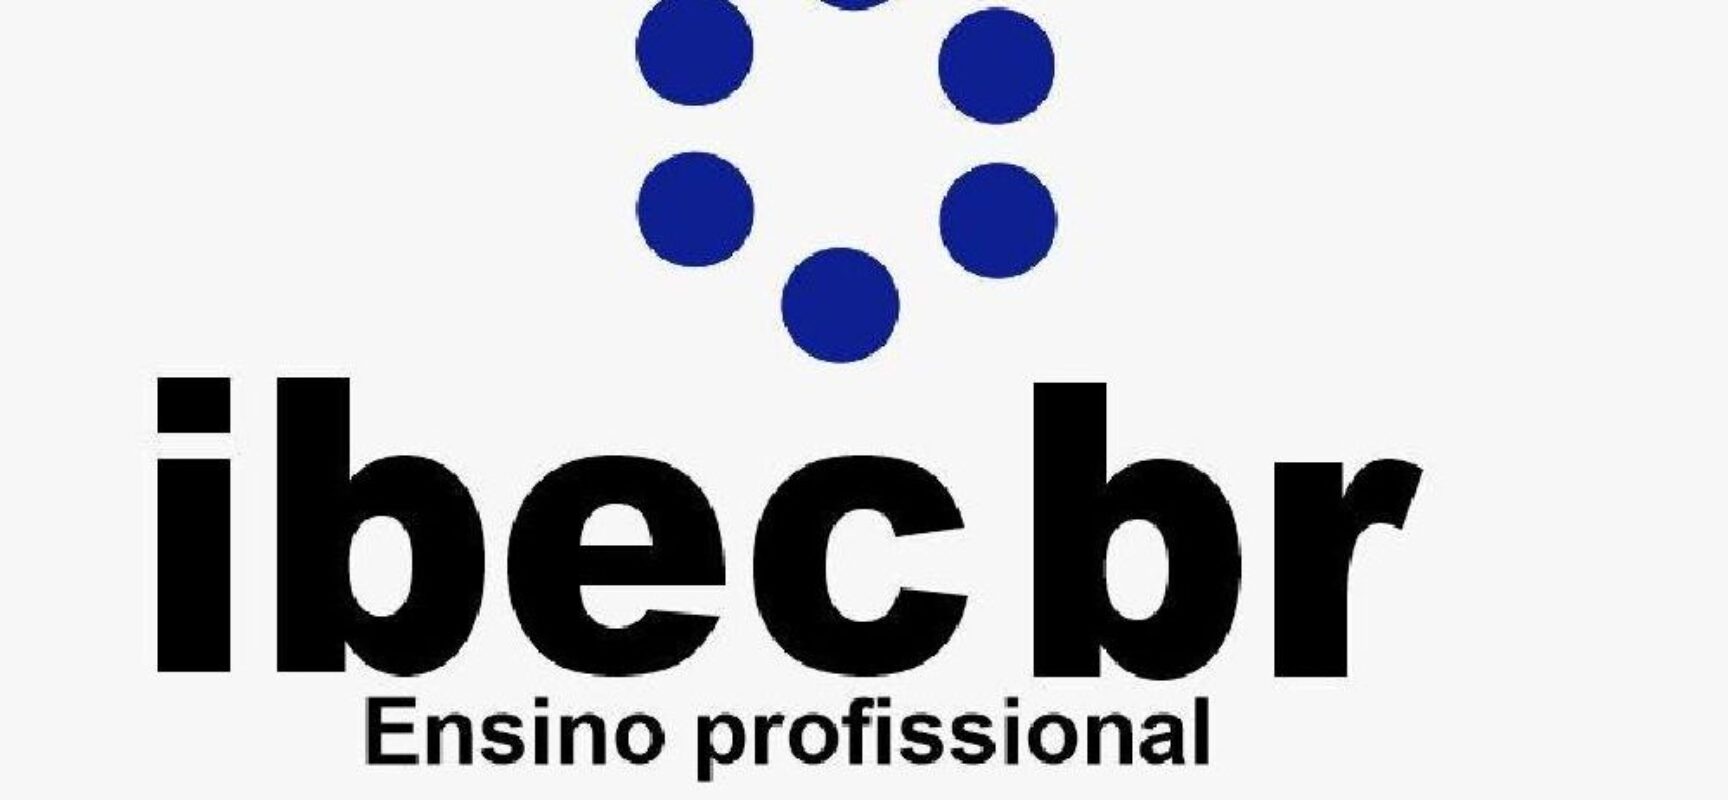 Com aumento da procura por cursos técnicos no Brasil, IBEC desponta ao oferecer formação altamente qualificada